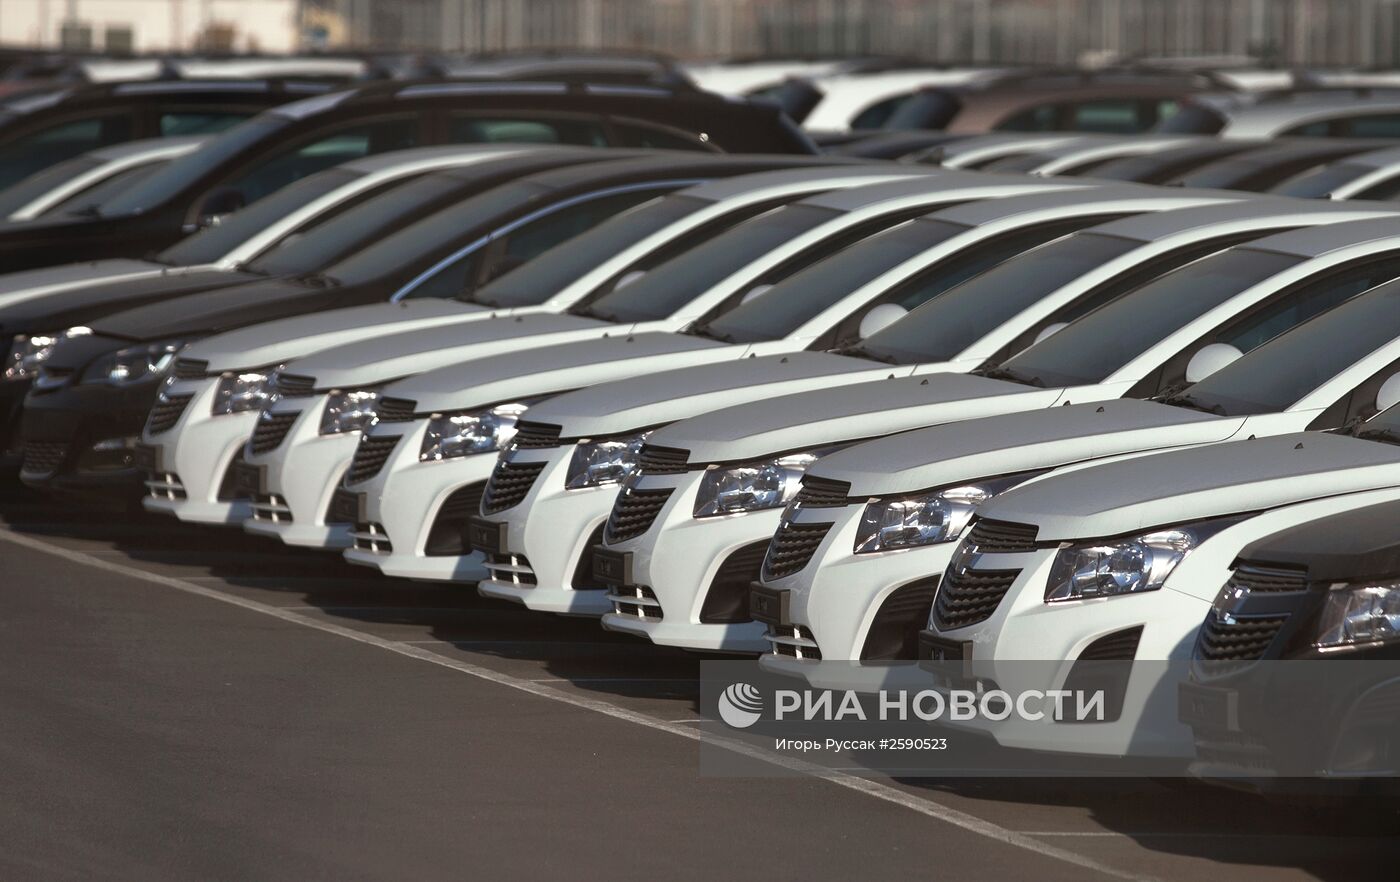 Концерн General Motors снимает с российского рынка бренд Opel и массовые модели Chevrolet